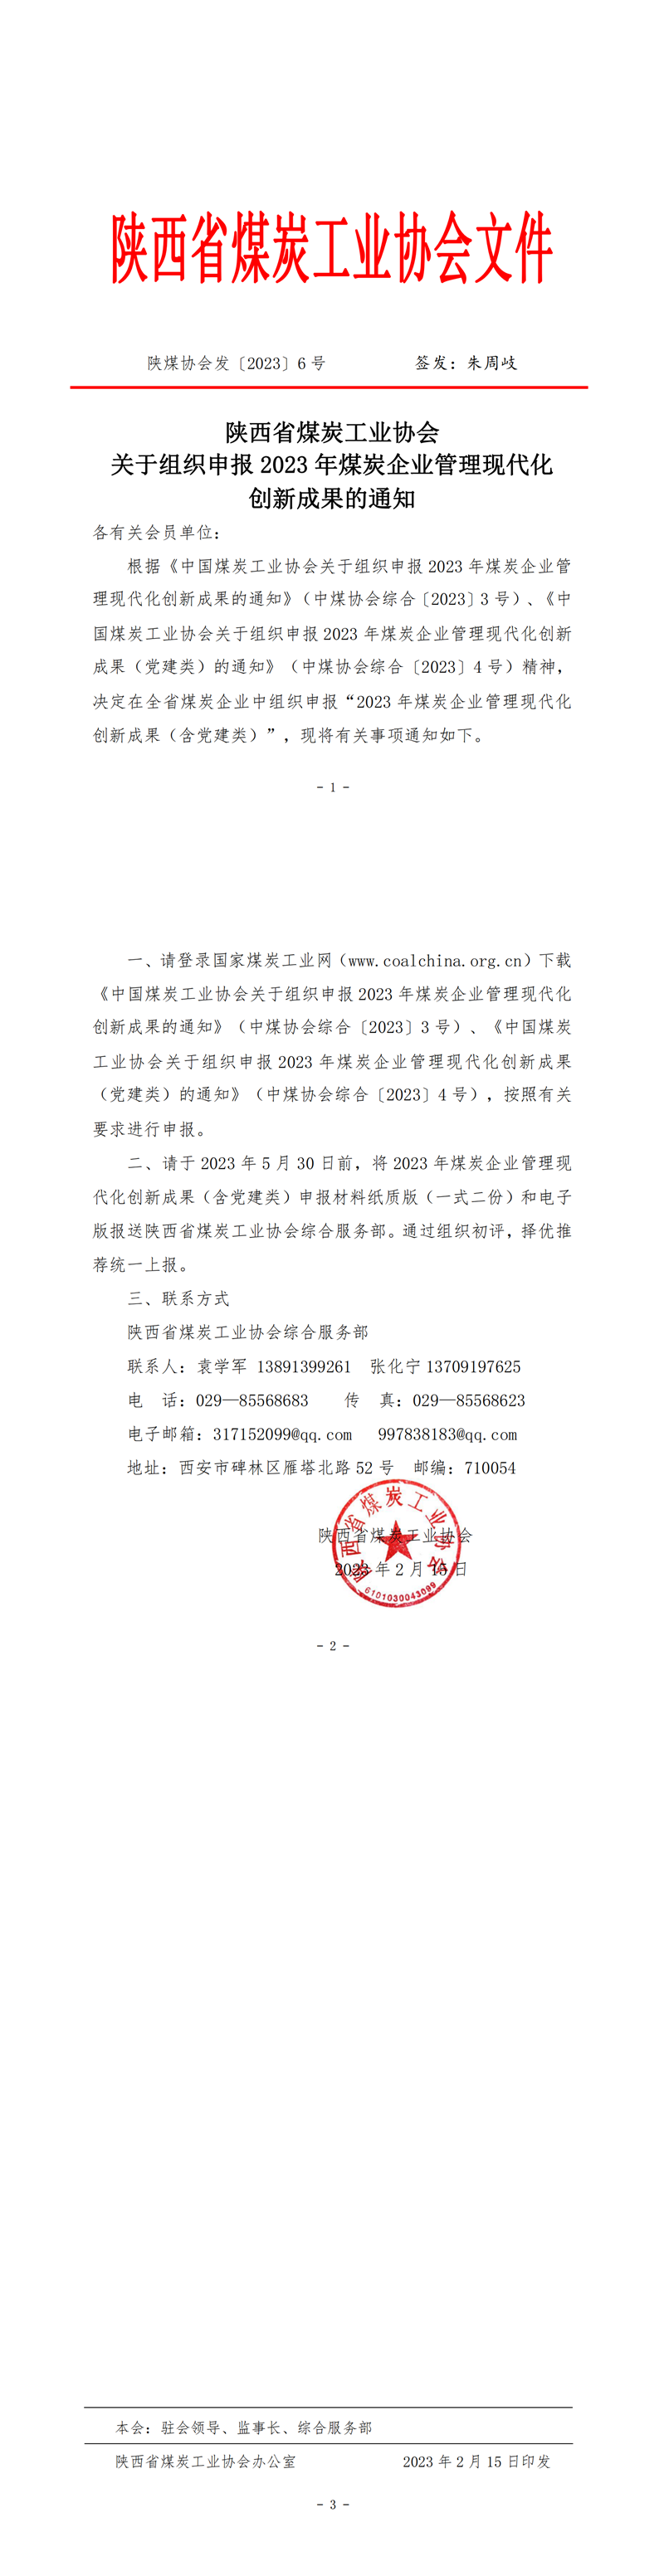 陕煤协会发（2023）6号组织申请煤企管理现代化创新成果的通知_00.png